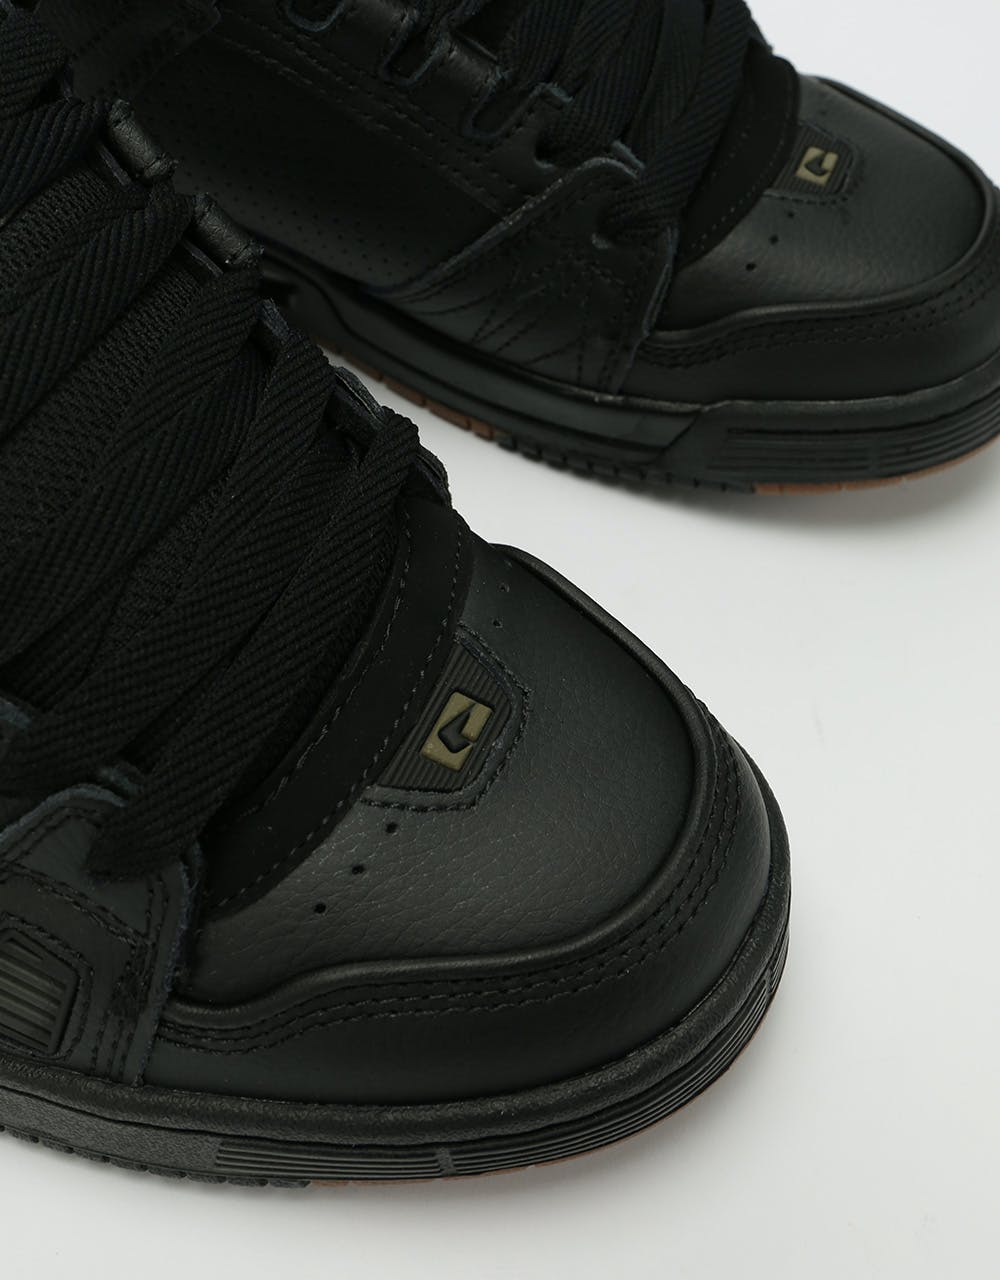 Globe Sabre Skate Shoes - Black/Tiger Camo/Gum